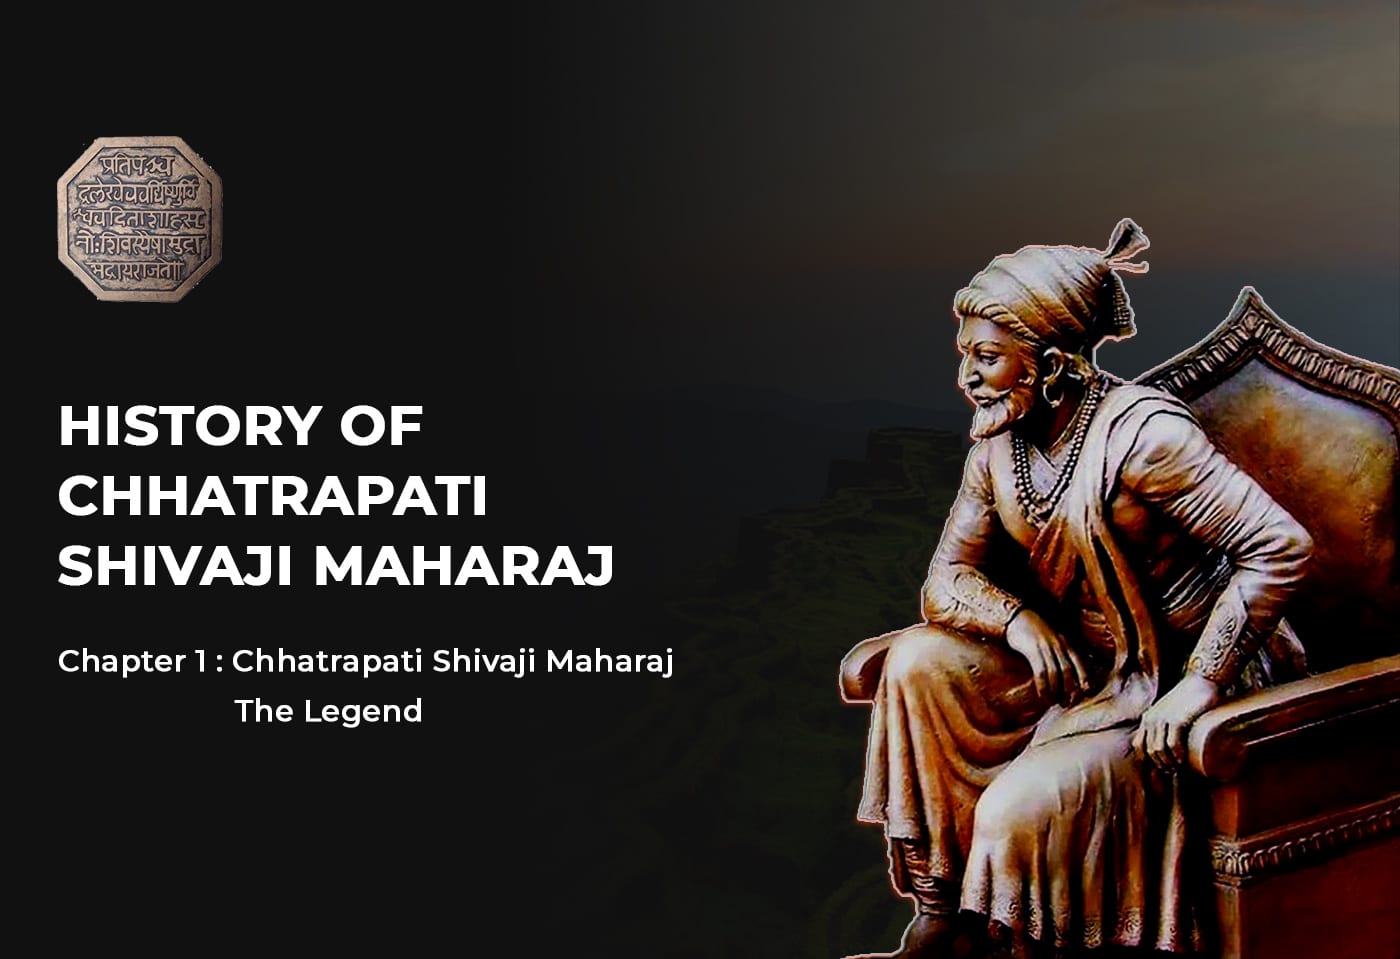 छत्रपती शिवाजी महाराजांचा इतिहास - अध्याय १ छत्रपती शिवाजी महाराज दंतकथा - हिंदू प्रश्न